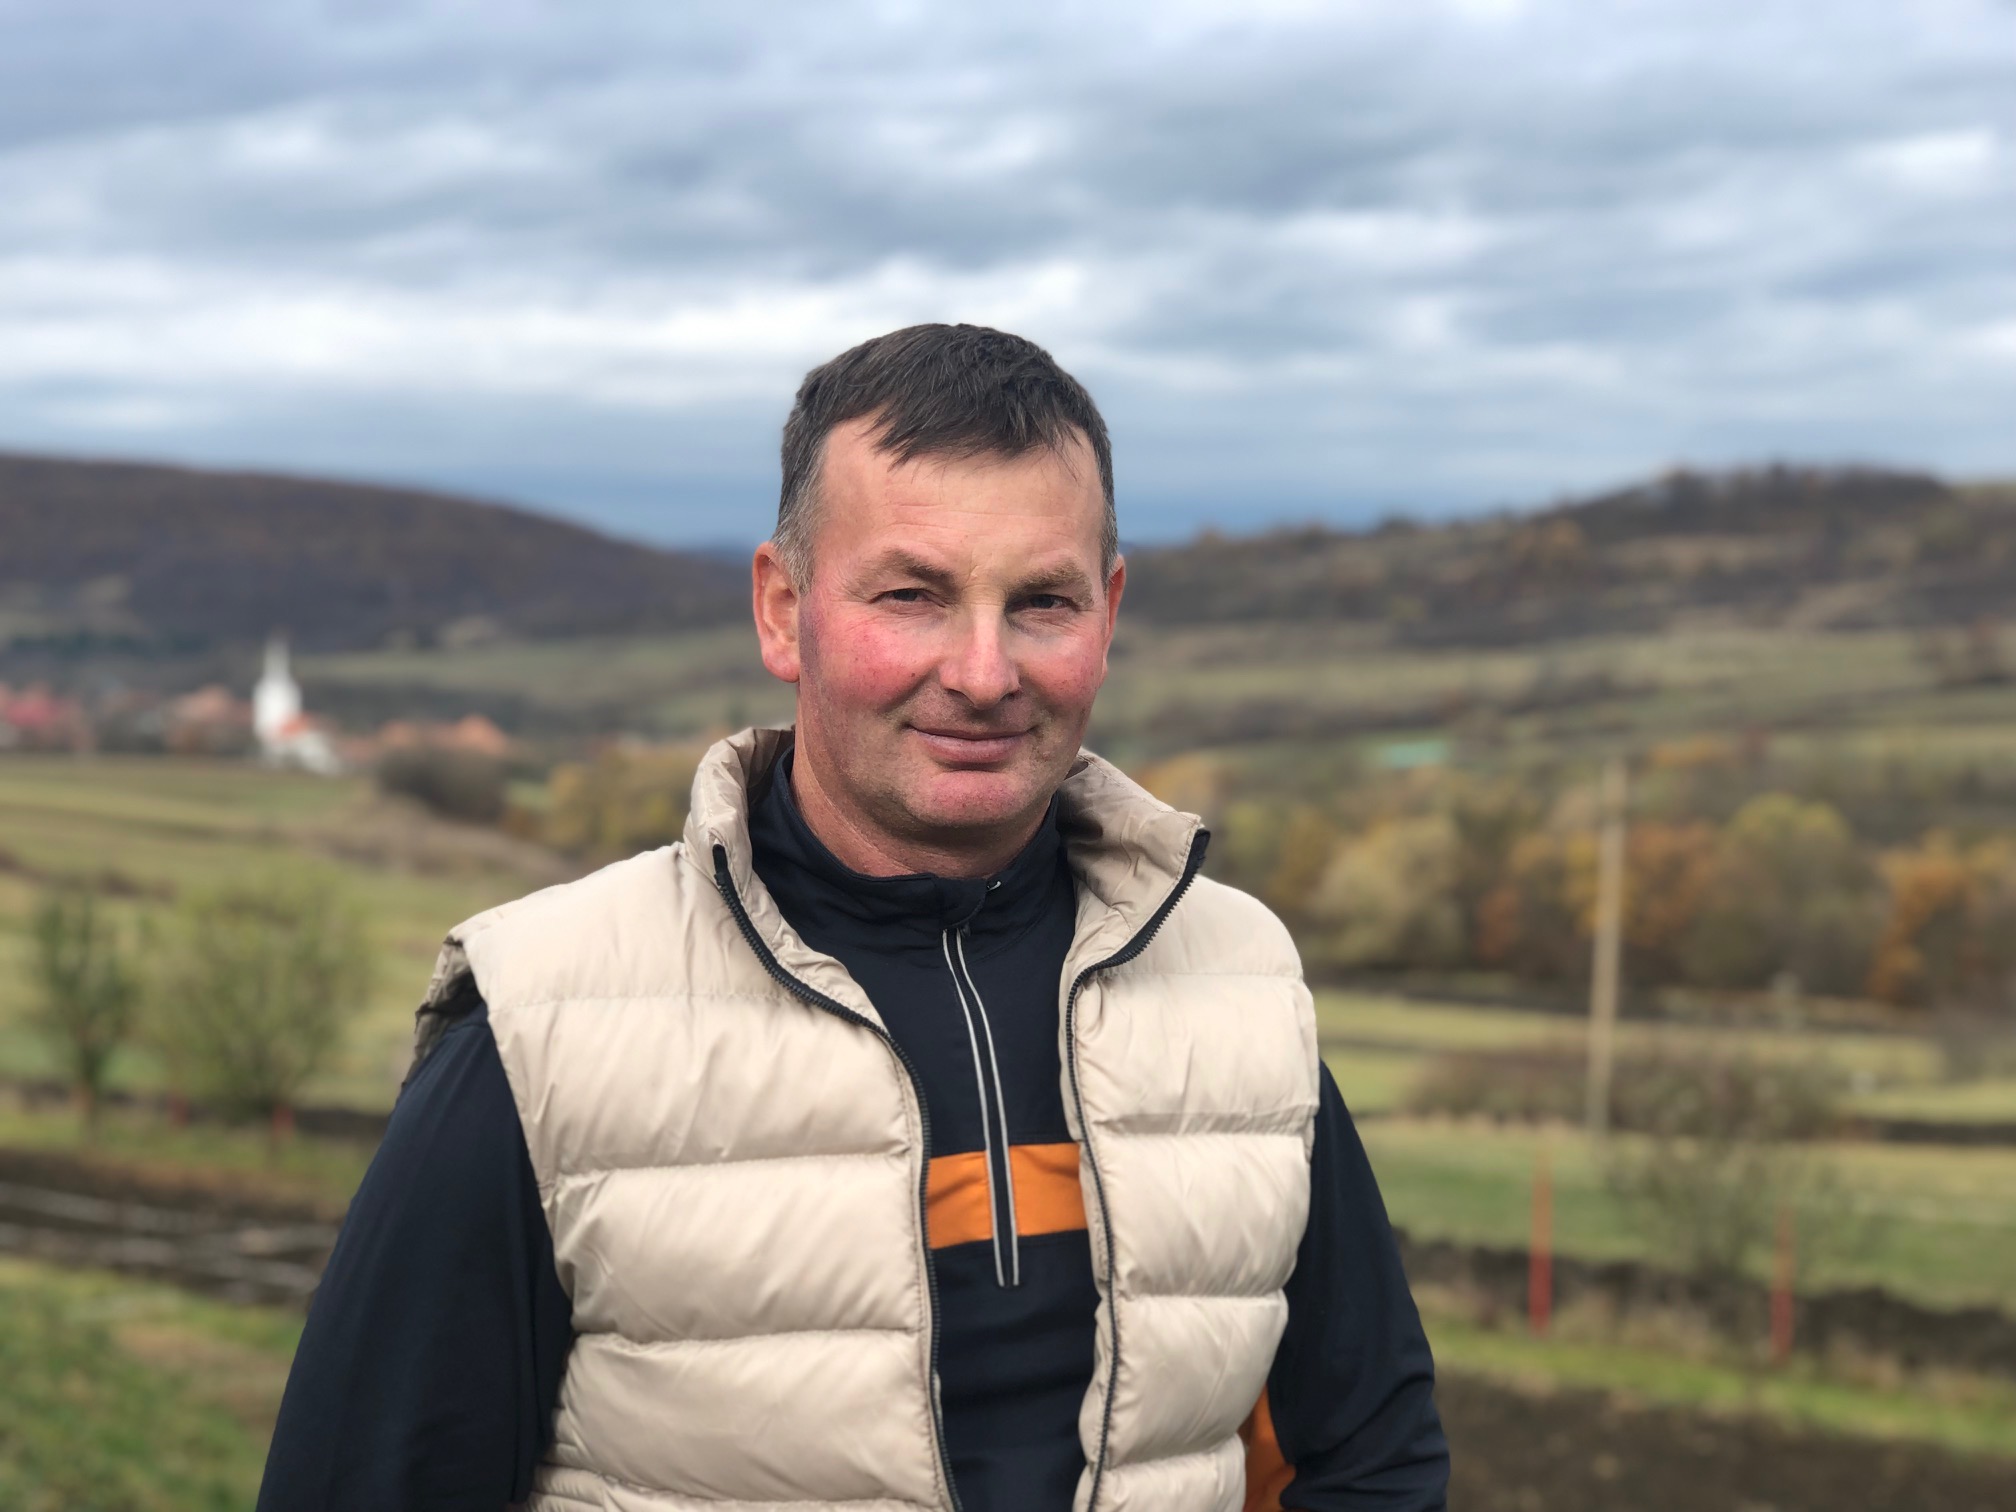 Szarvasmarhatartó gazda Jásfalván: Érdemes a mezőgazdaságba fektetni